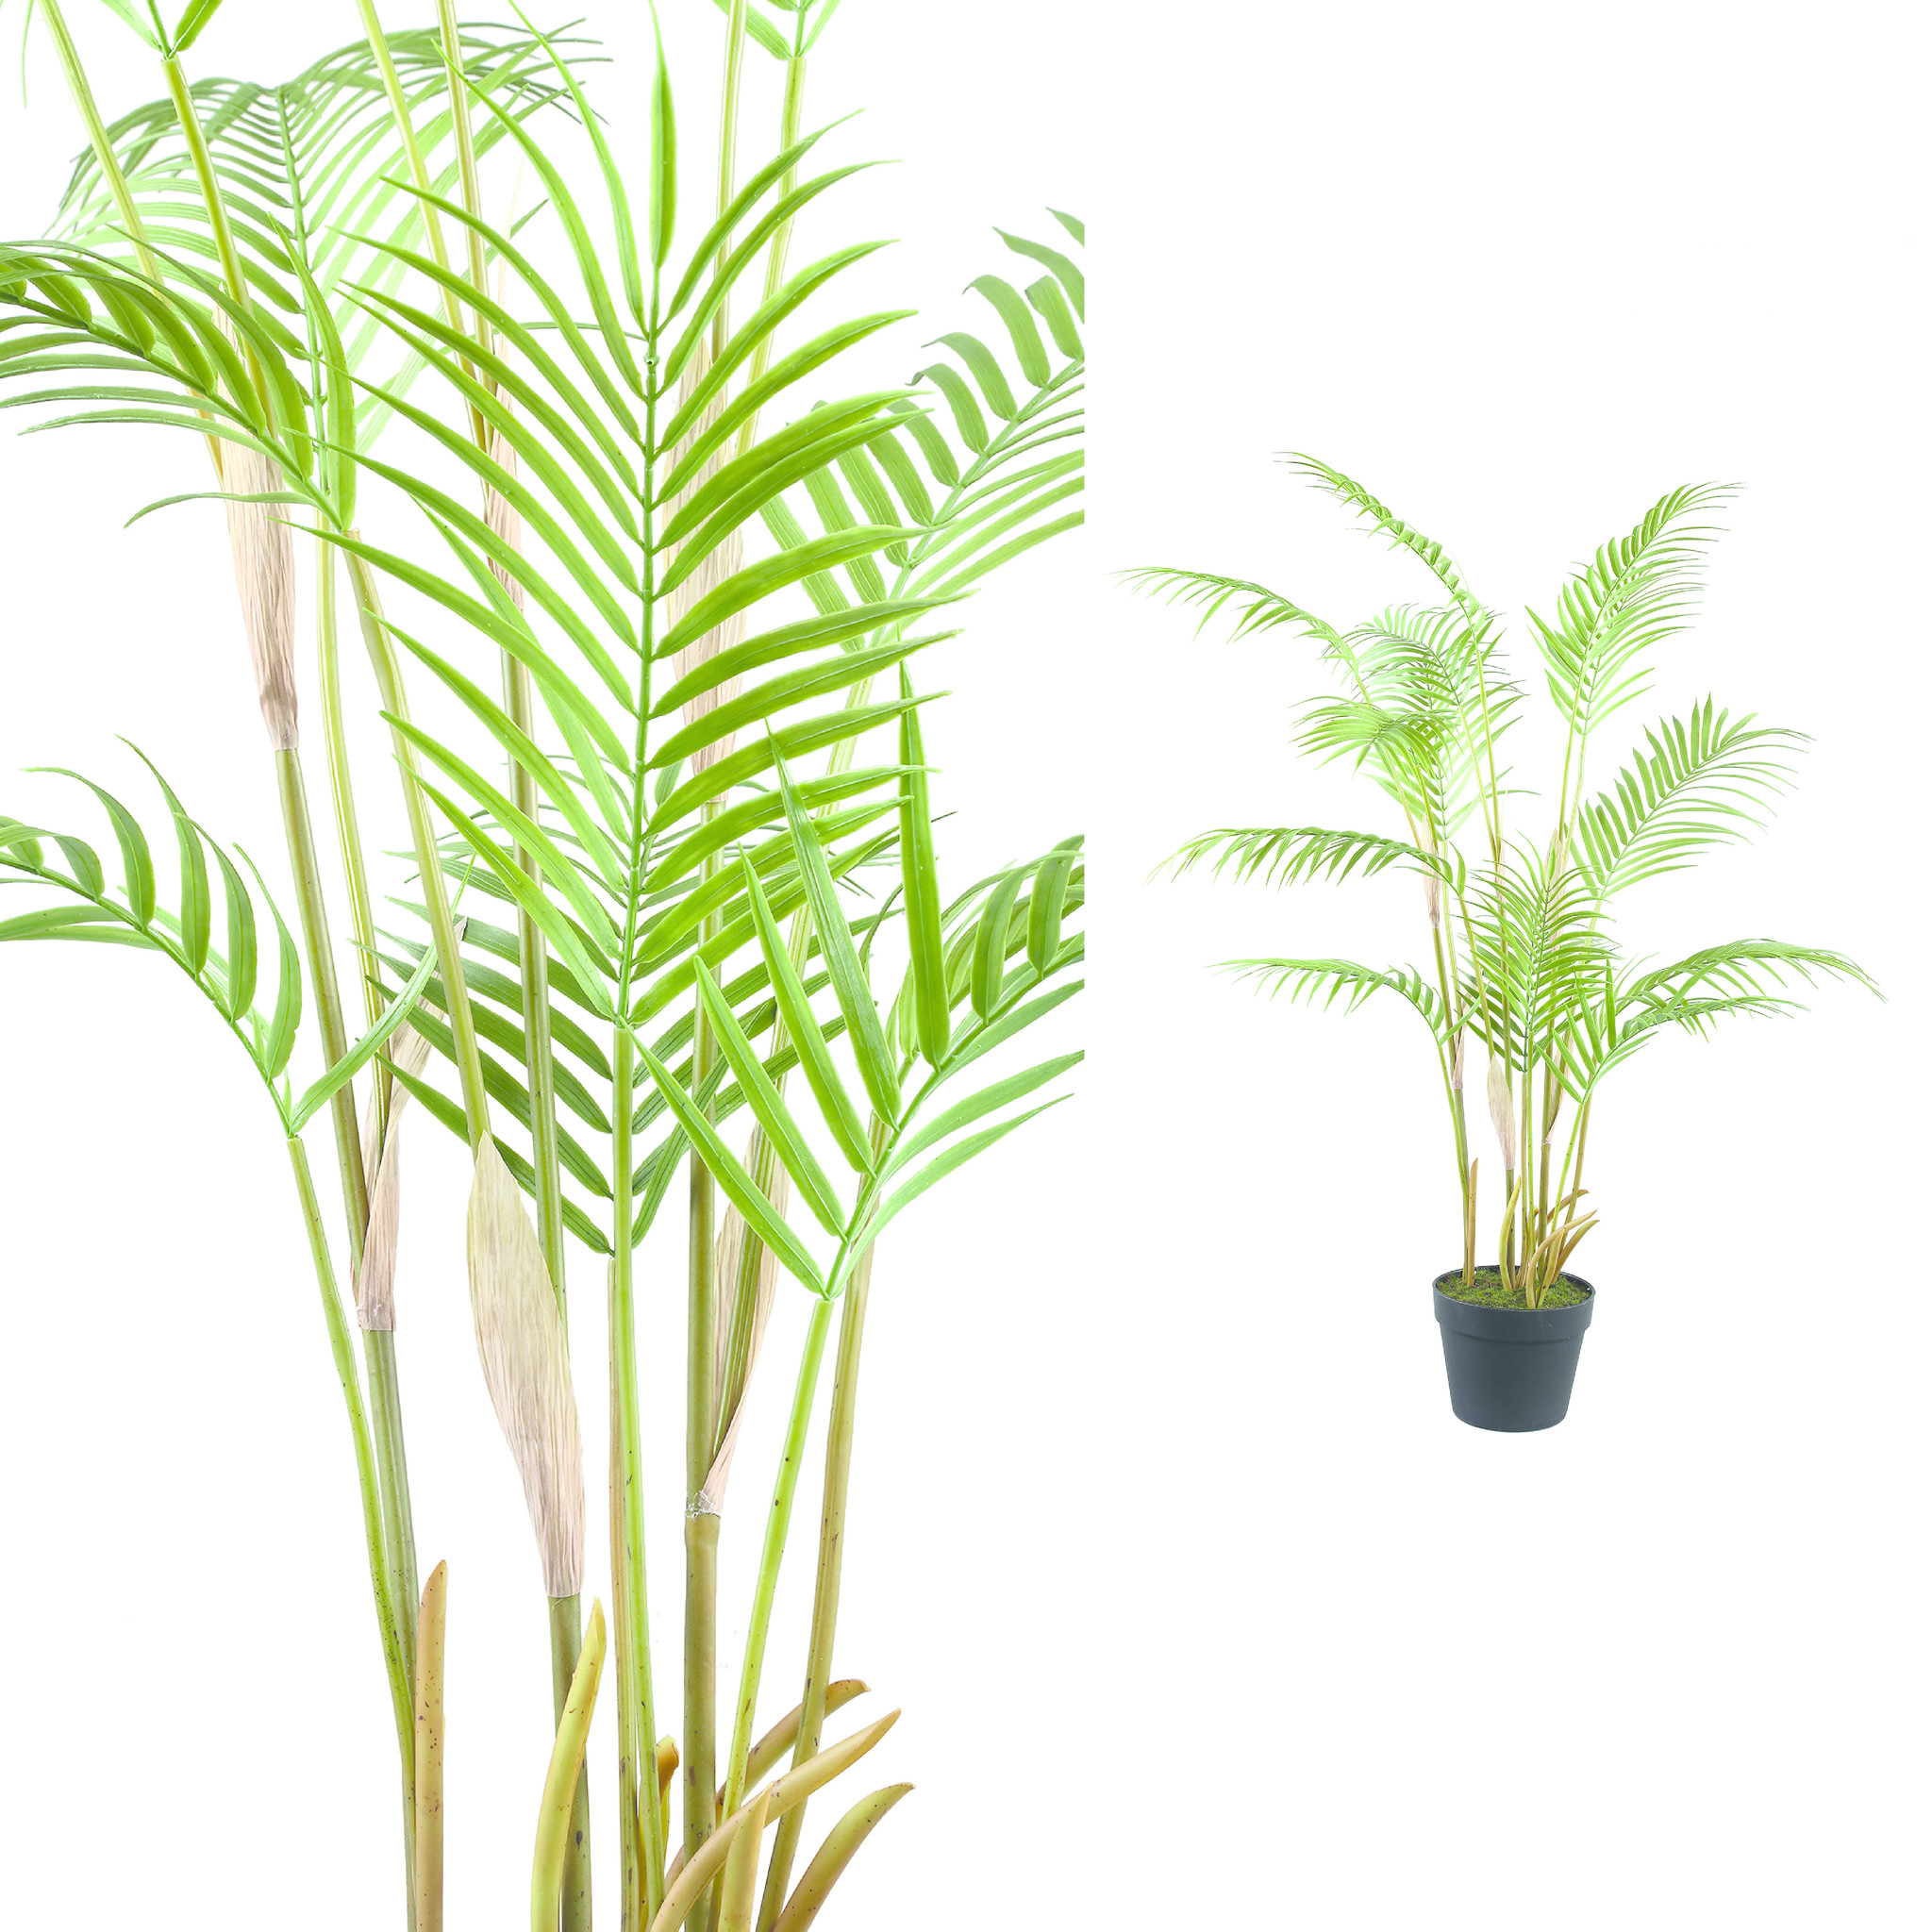 Ontoegankelijk ondergeschikt Toegangsprijs Palmboom groen in zwarte plastic pot - Gratis thuisbezorgd - De Woon Winkel